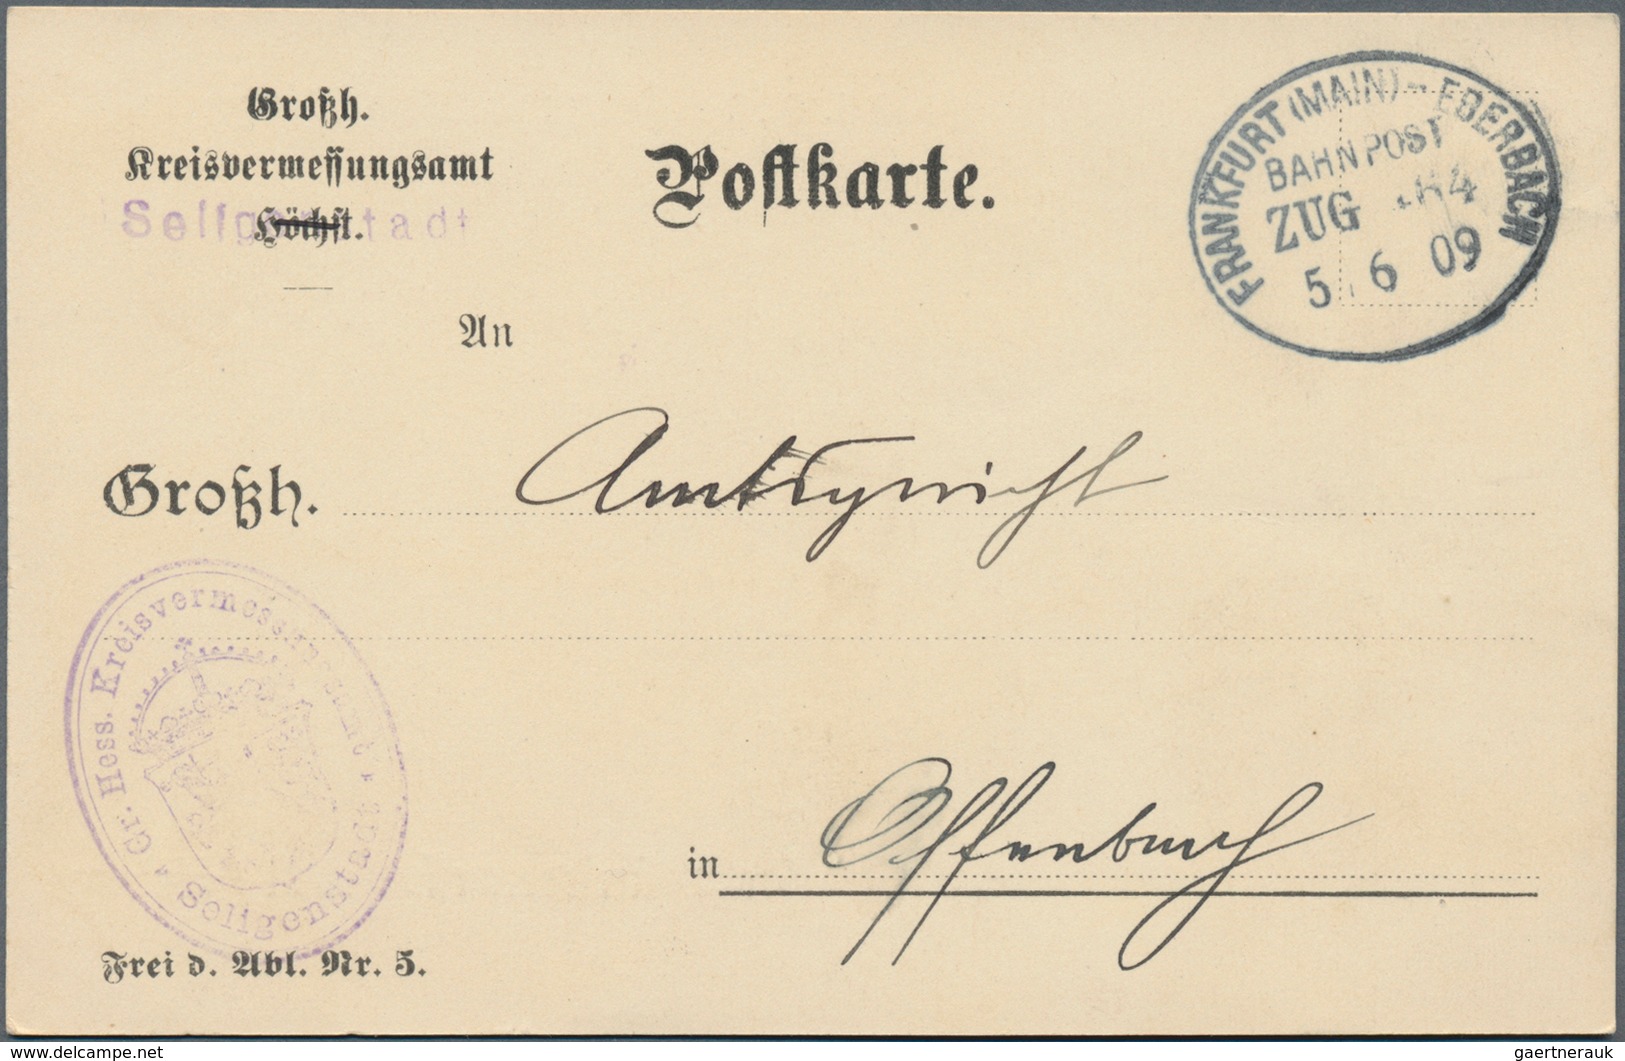 Deutsches Reich - Bahnpost: 1870/1945 (ca.), rd. 300 Belege (dabei zahlreiche Ansichtskarten) mit St